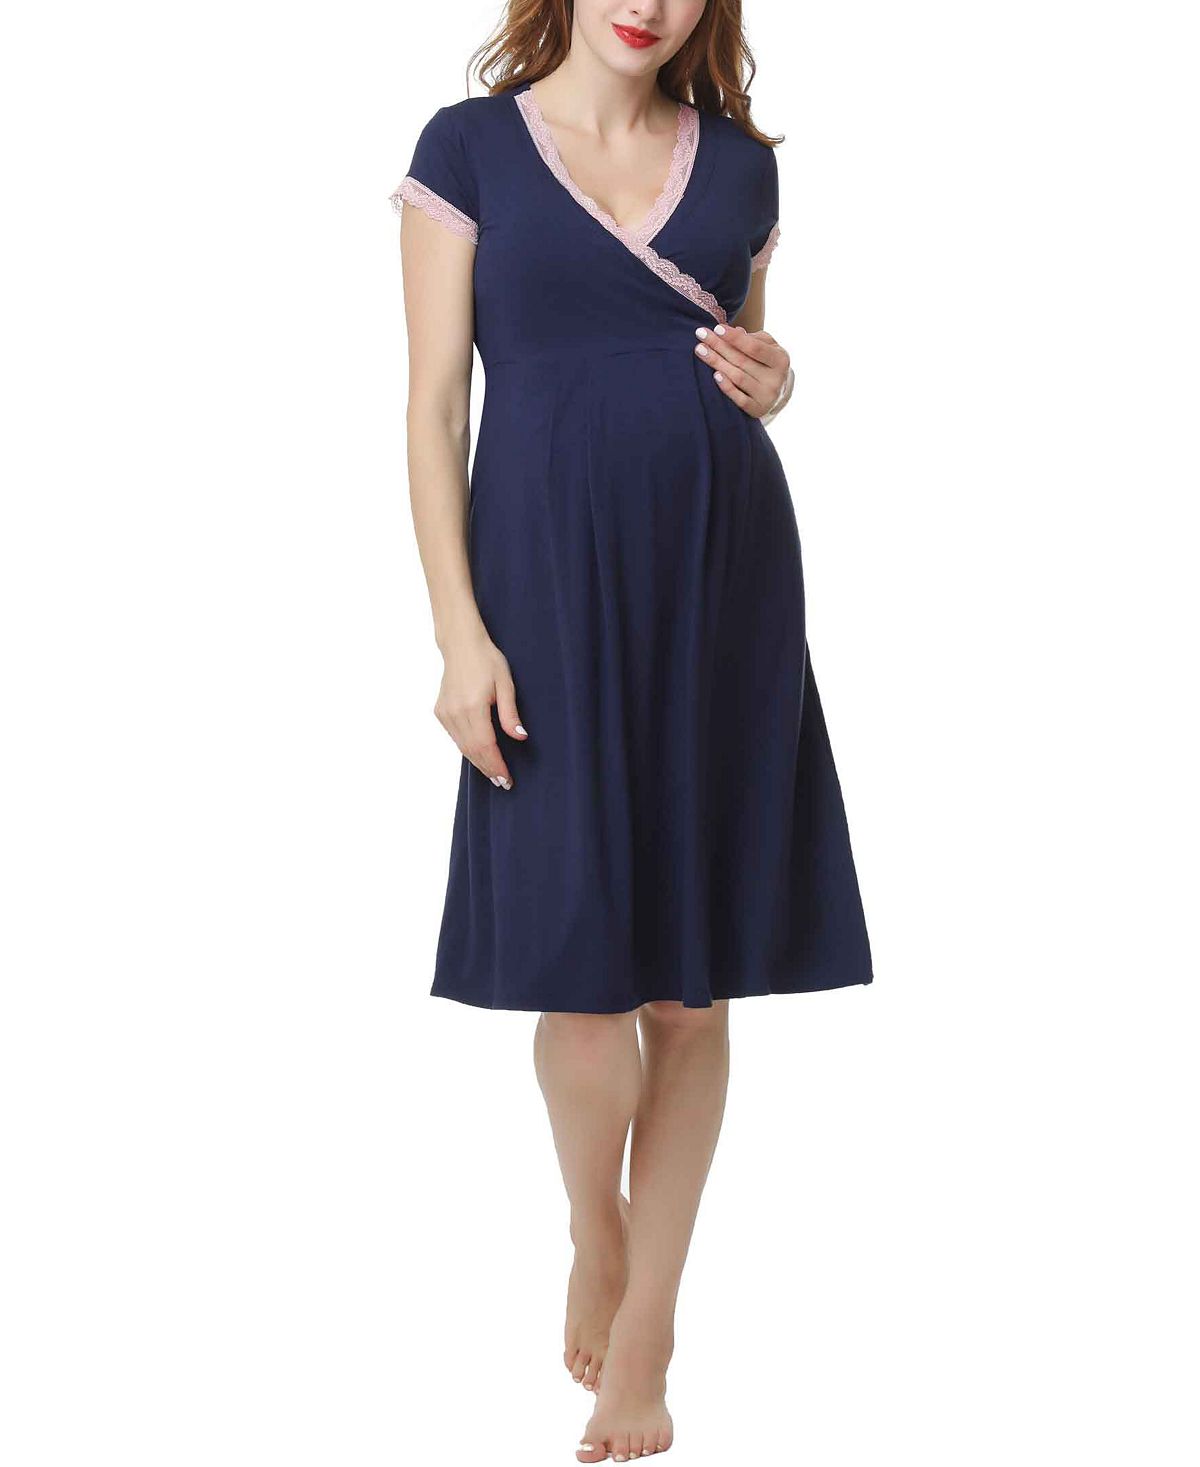 Ночная рубашка для беременных и кормящих мам kimi & kai jenny kimi + kai, синий ночная рубашка для беременных кормящих и amp комплект халатов accouchée цвет gray